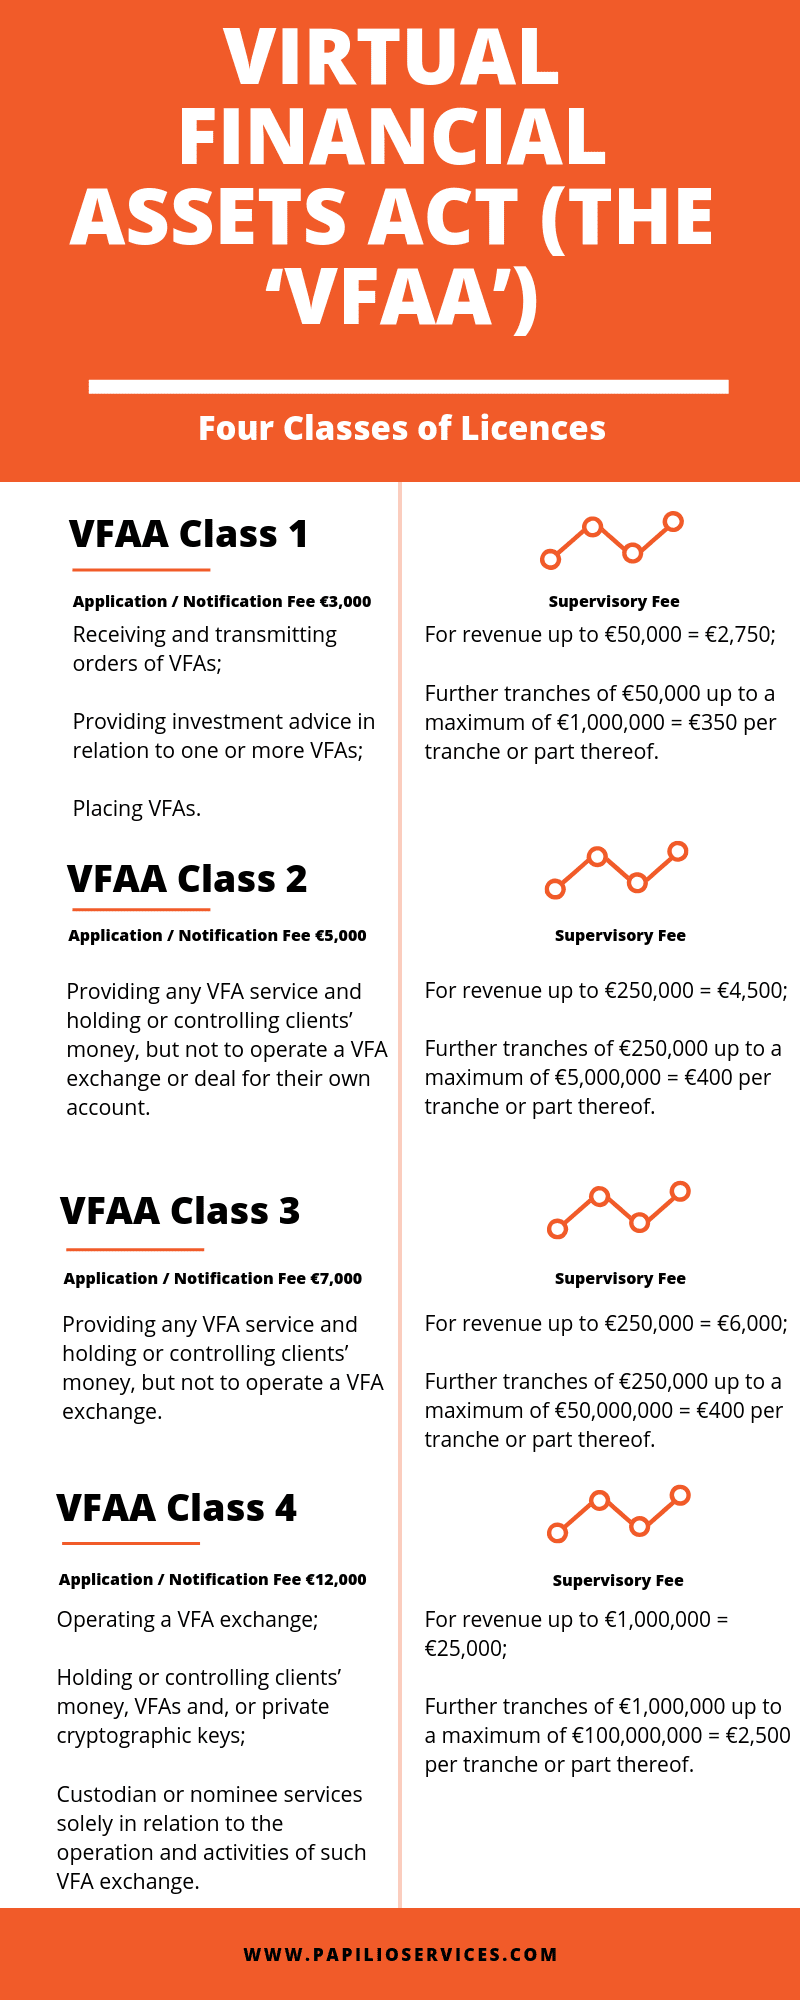 VFAA licences in Malta